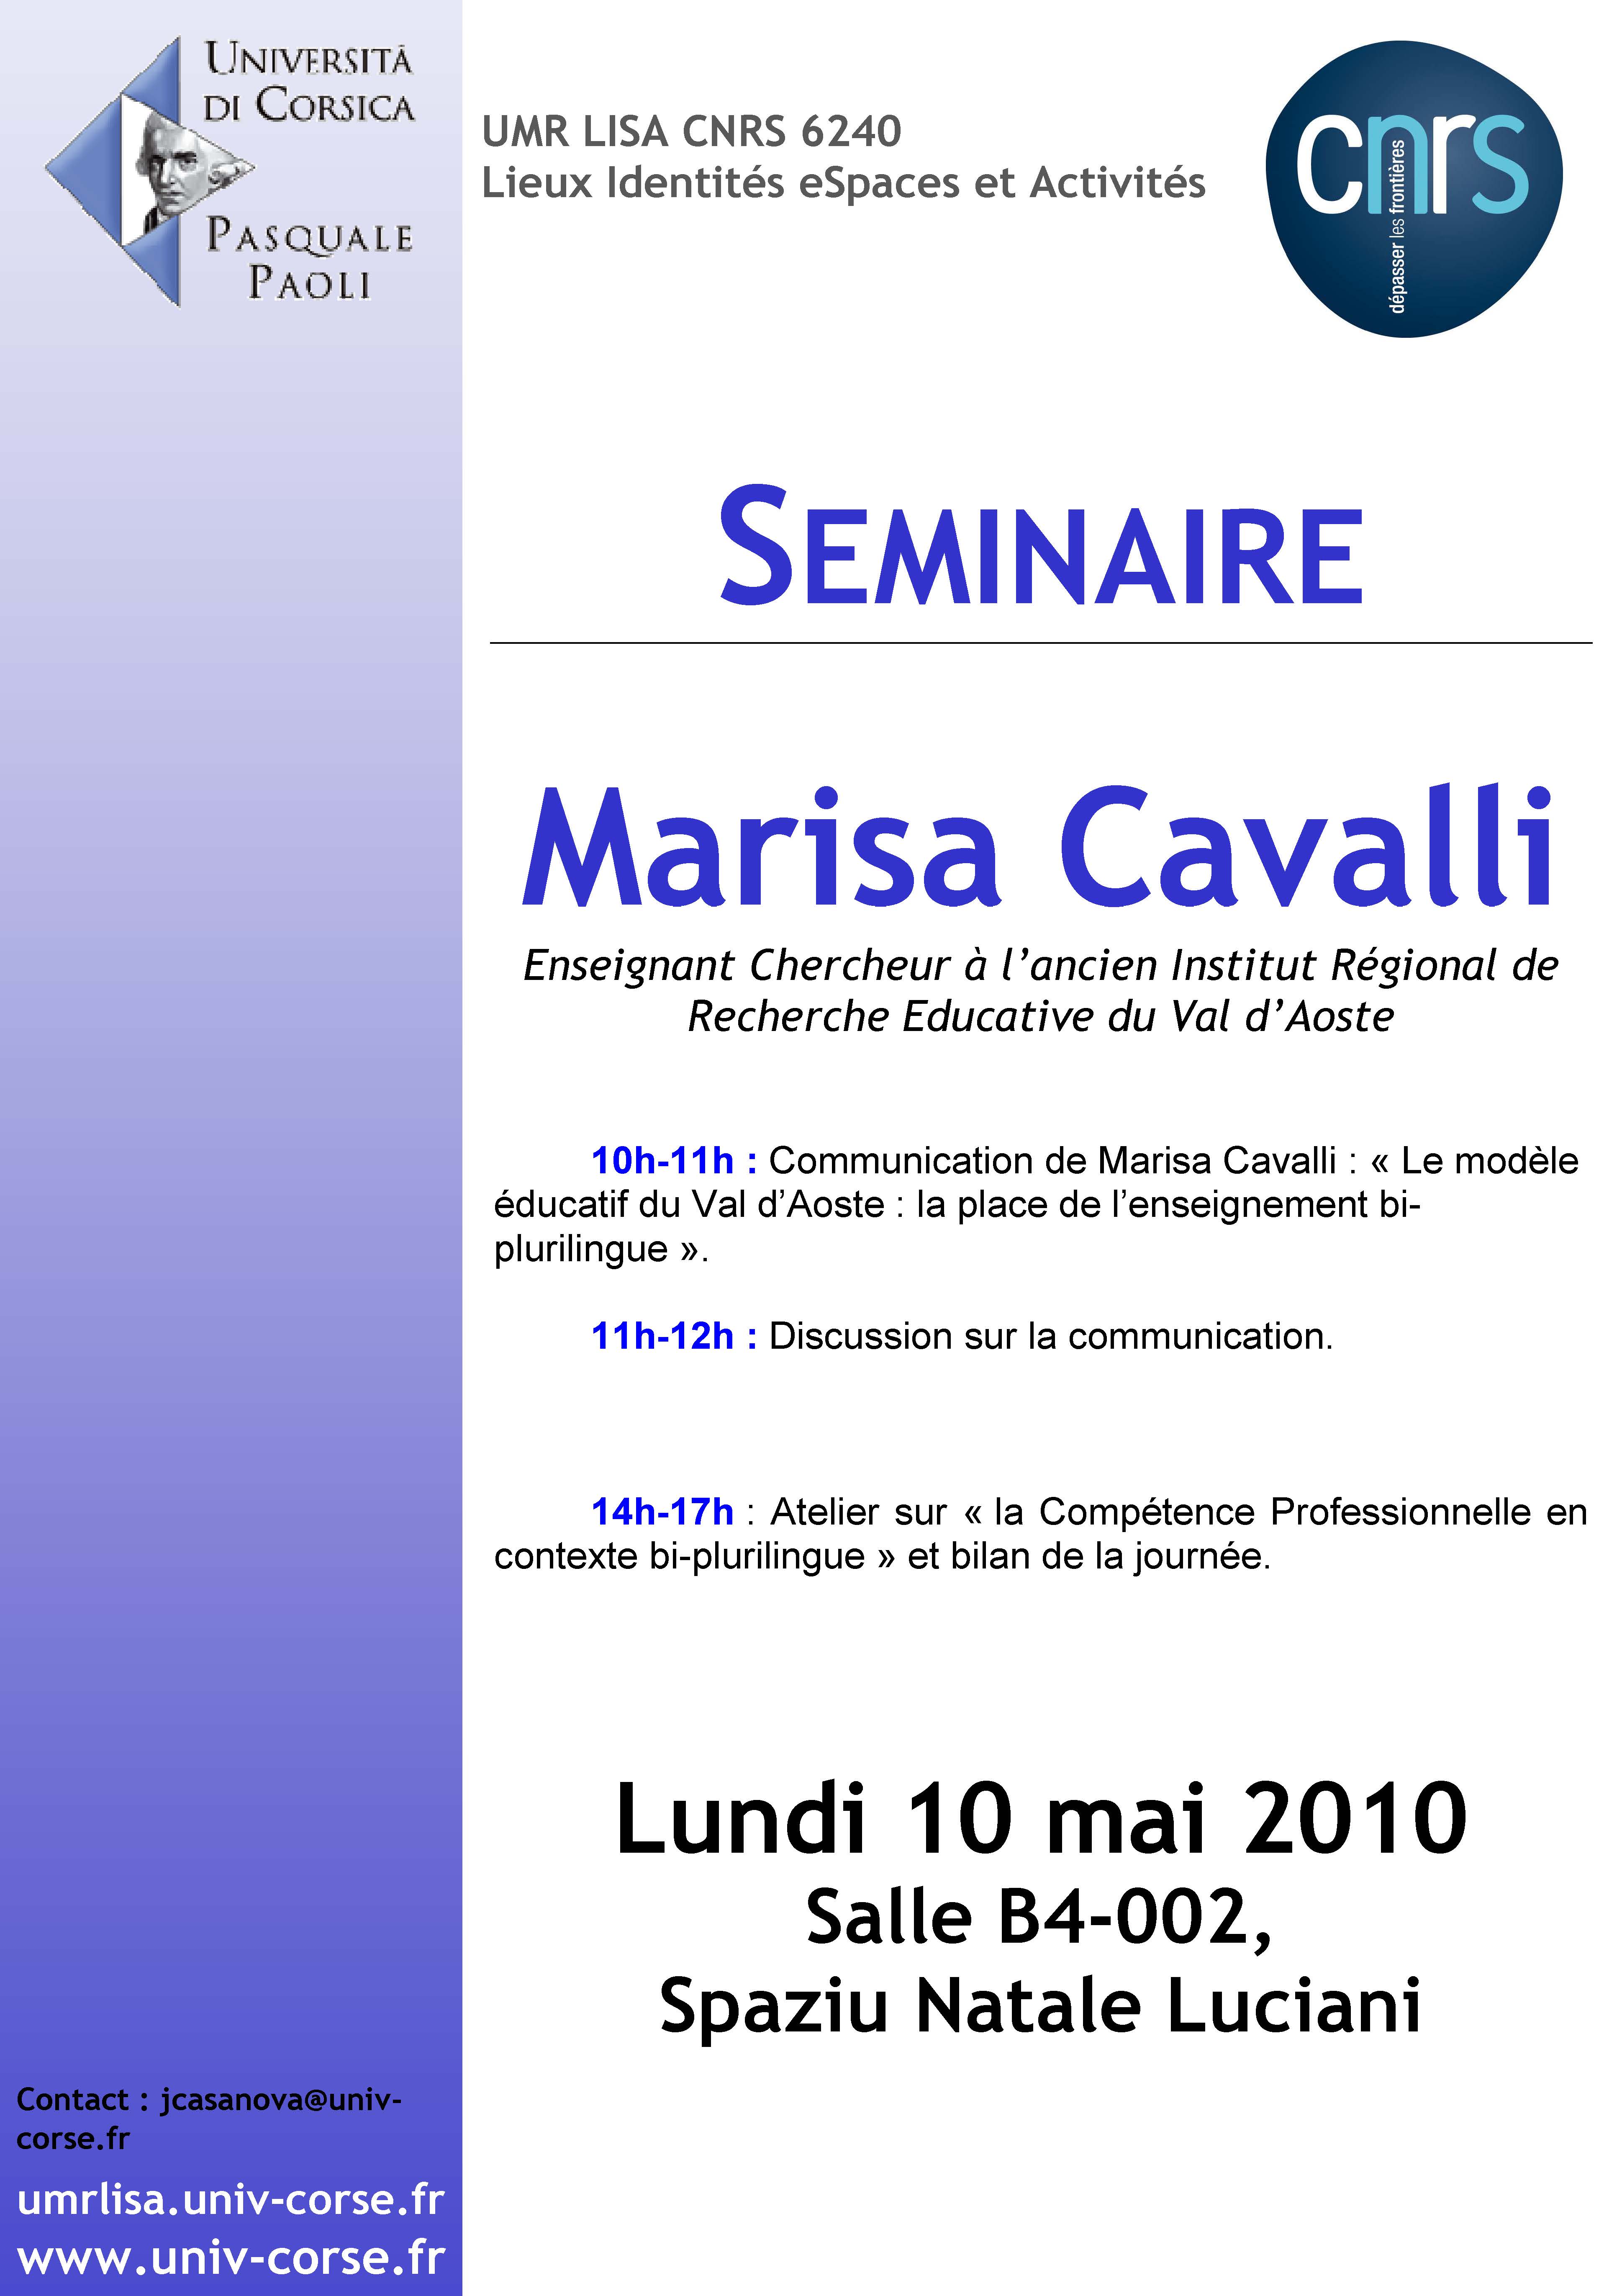 >Séminaire Marisa Cavalli - Le modèle éducatif du Val d'Aoste, la place de l'enseignement bi-plurilingue